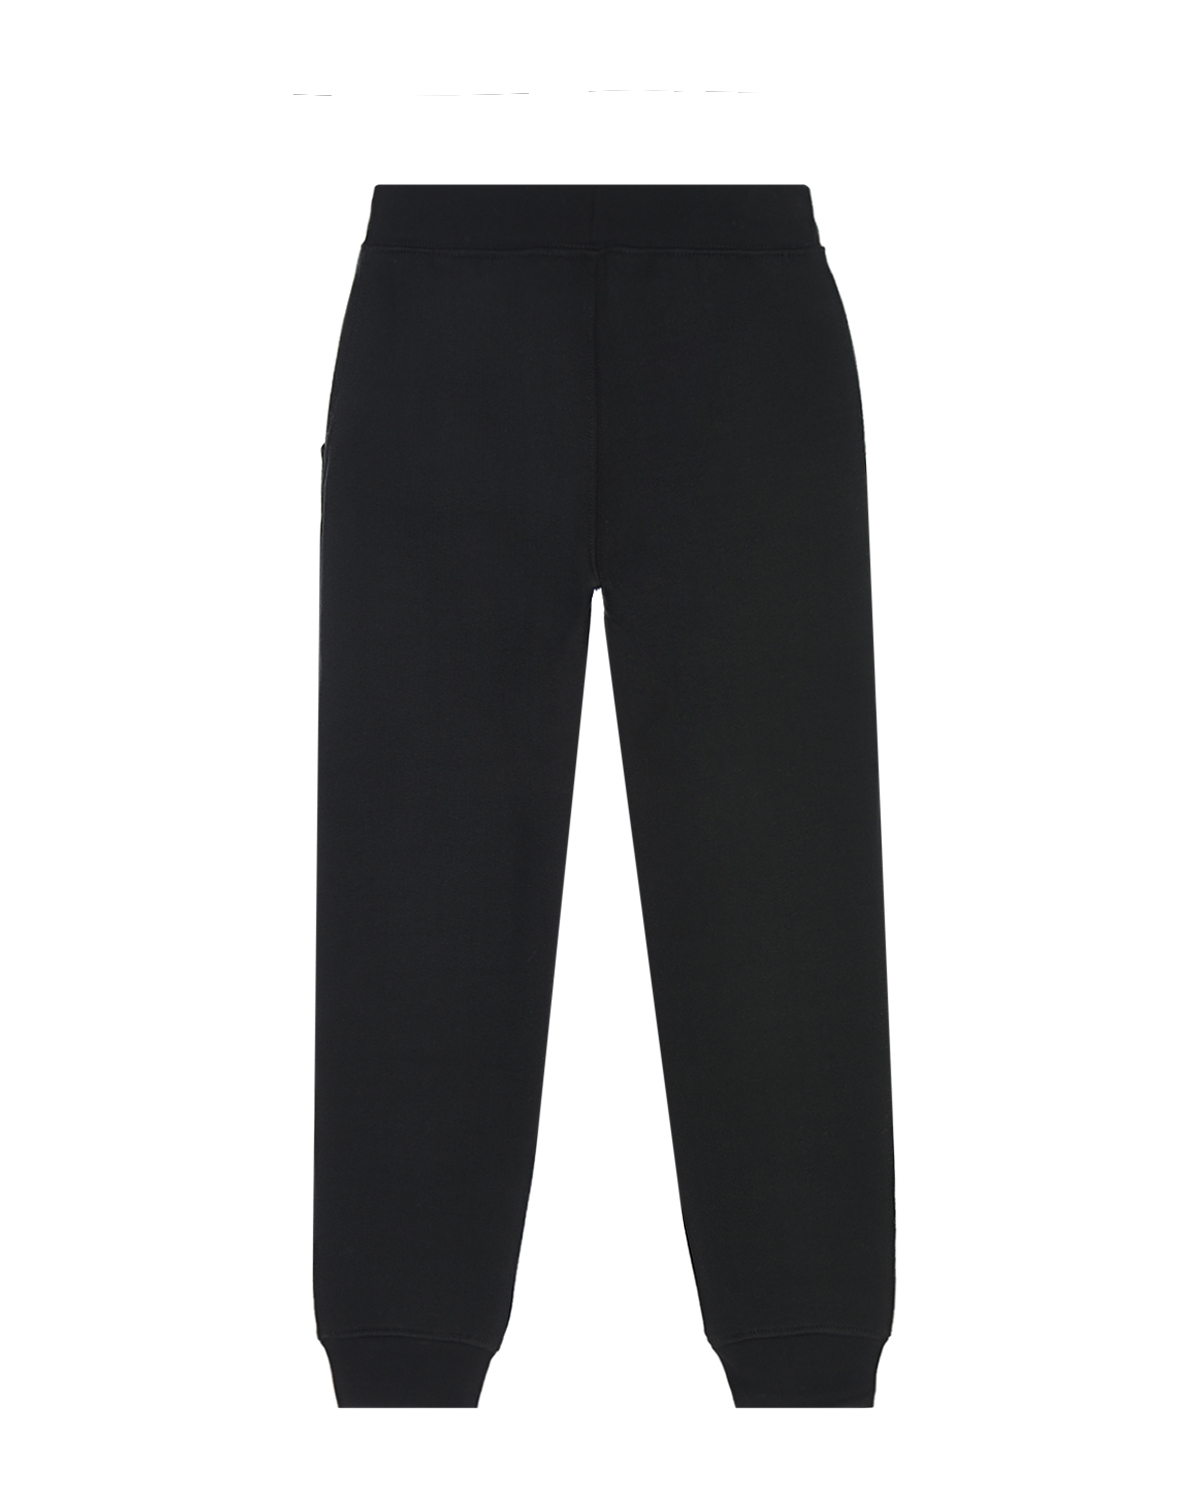 Спортивные брюки с логотипом Ralph Lauren детские, размер 128, цвет черный - фото 2